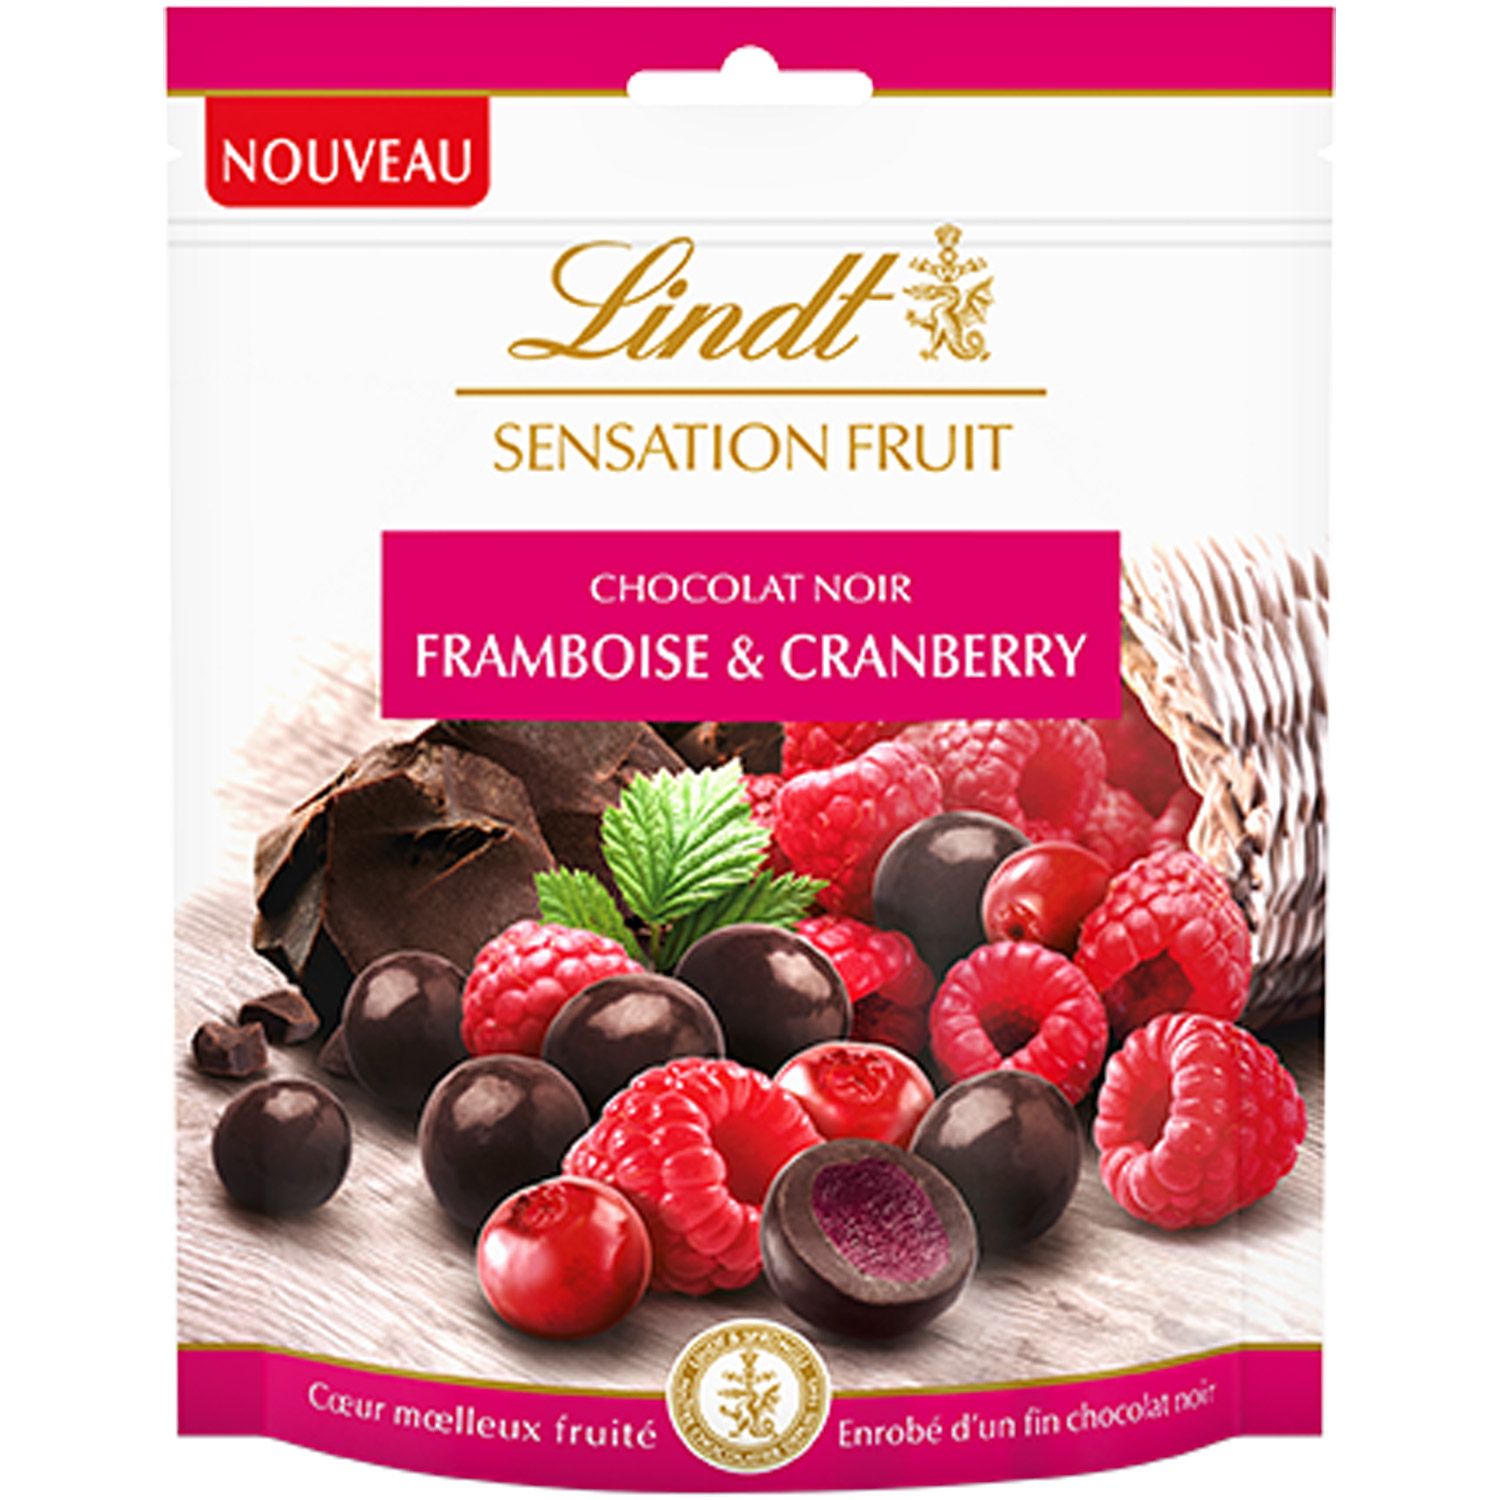 LINDT Lindt sensation fruit chocolat noir framboise cranberry 150g pas cher  